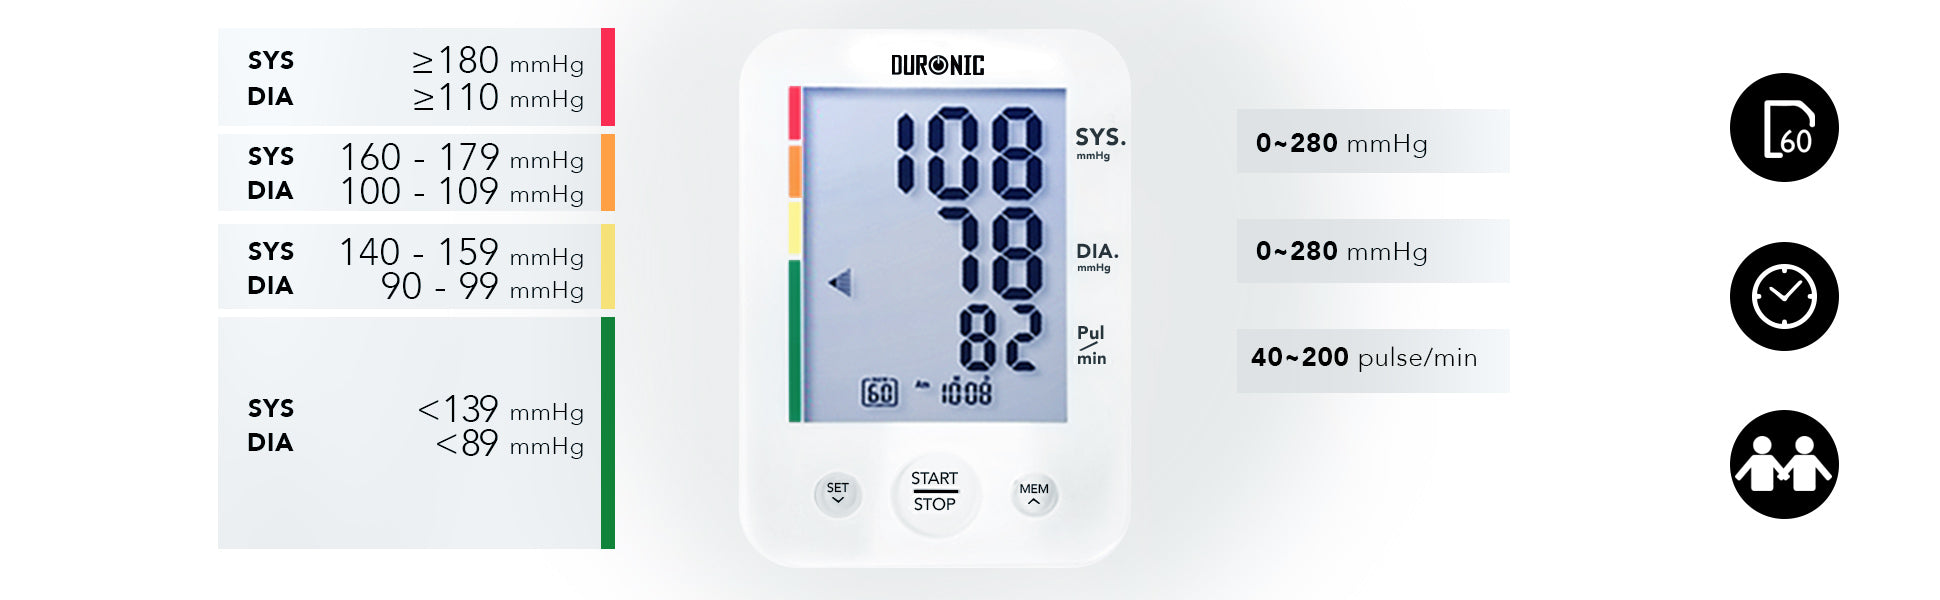 Duronic BPM200 Tensiomètre Electronique pour Bras – Mesure Automatique de  la Tension Artérielle – Détecte les Irrégularités Cardiaques – Large Ecran